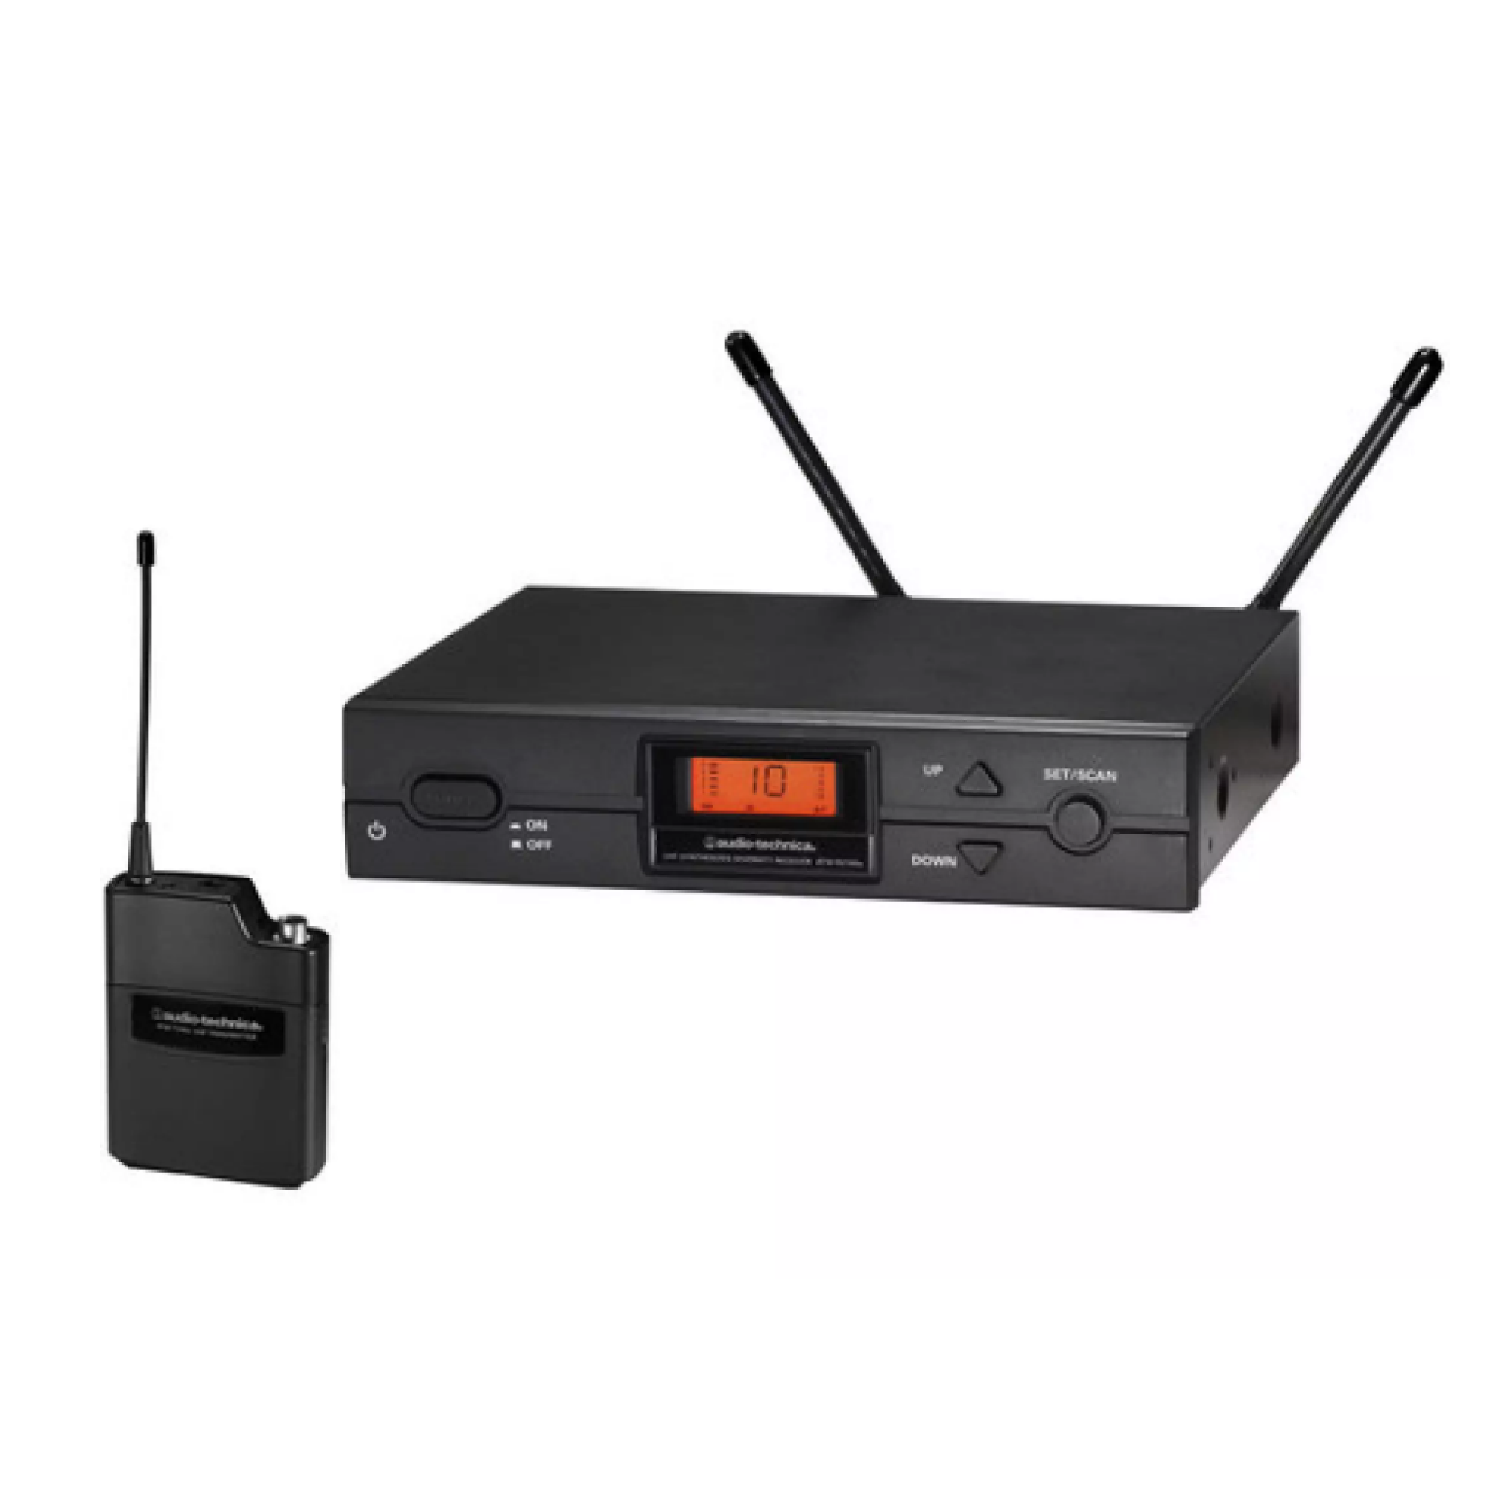 Bodypack Wireless System   ATW 2110 BL 497M EX audio technica